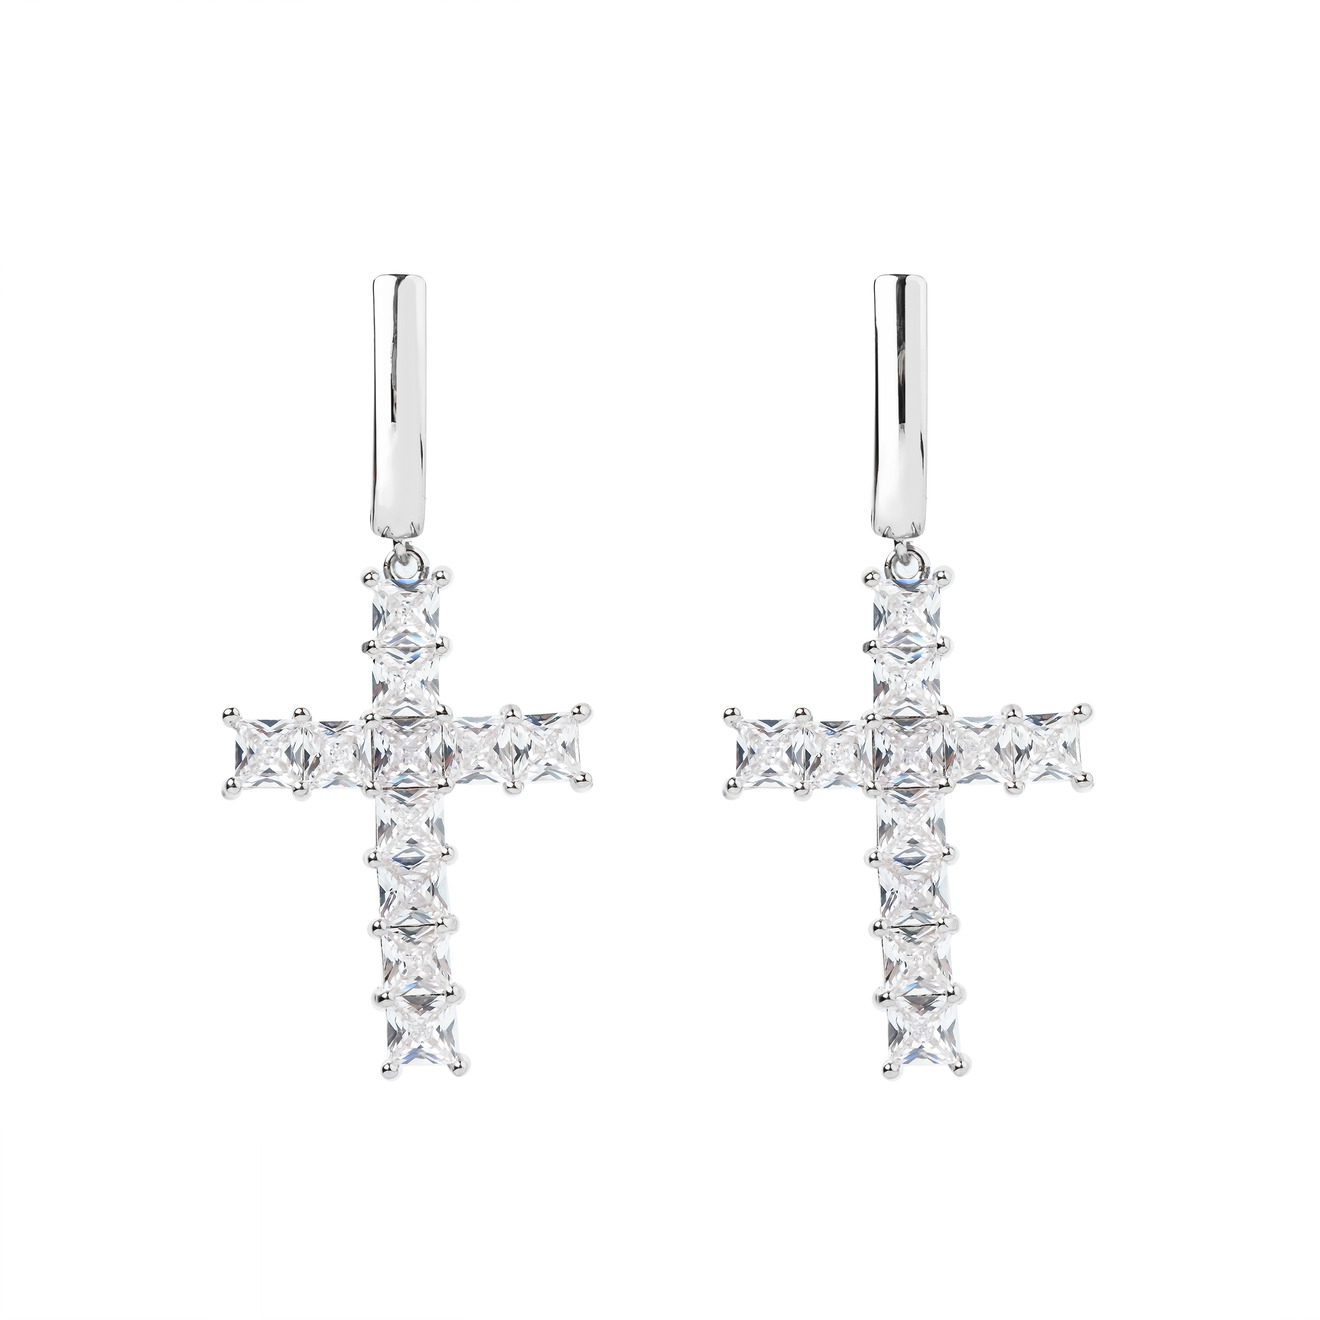 Herald Percy Серебристые серьги-кресты с кристаллами herald percy золотистые серьги кресты с кристалами